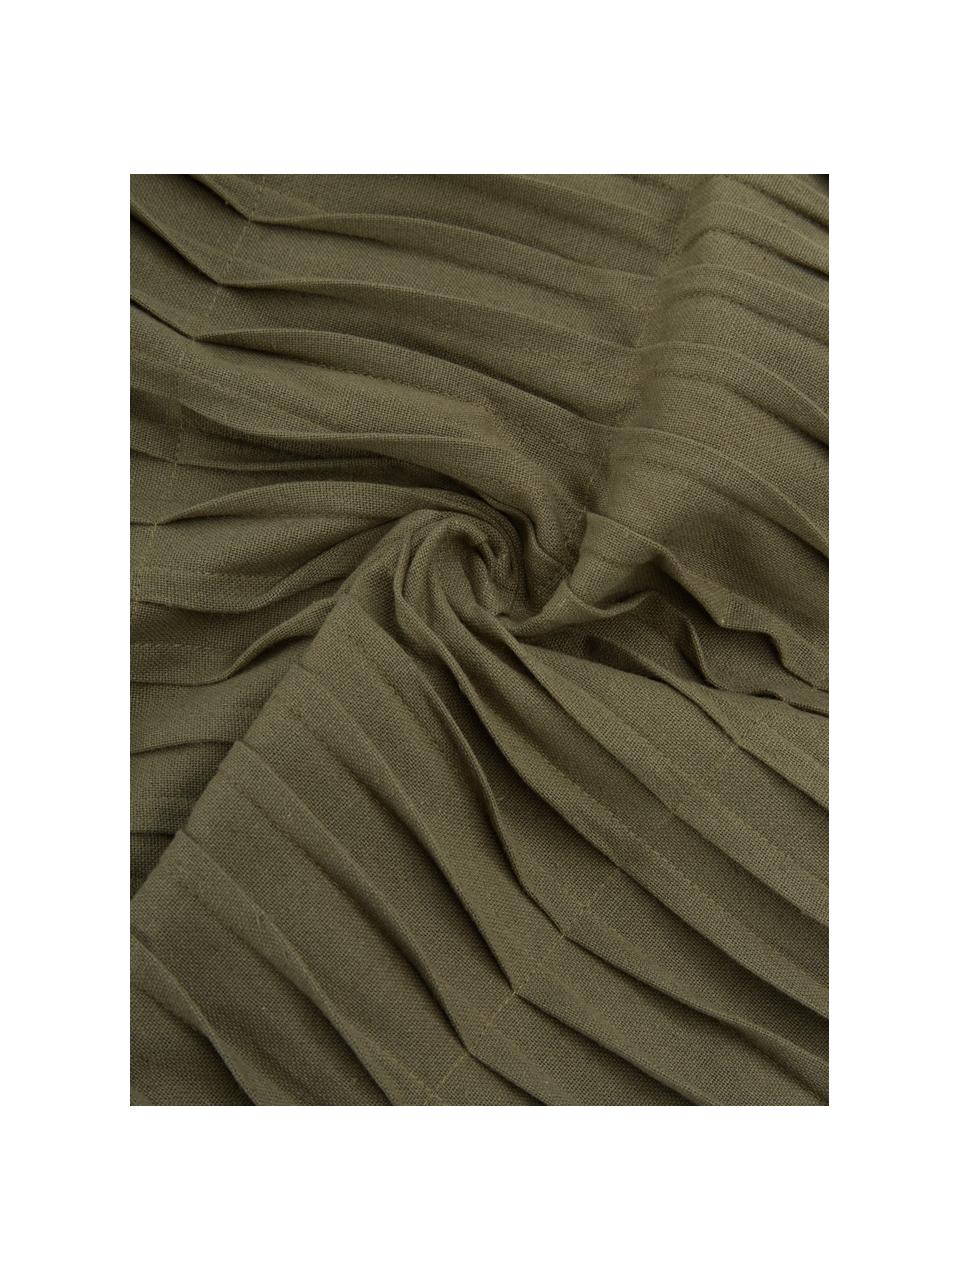 Poduszka z bawełny z wypełnieniem Pleated, 100% bawełna, Oliwkowy zielony, S 45 x D 45 cm